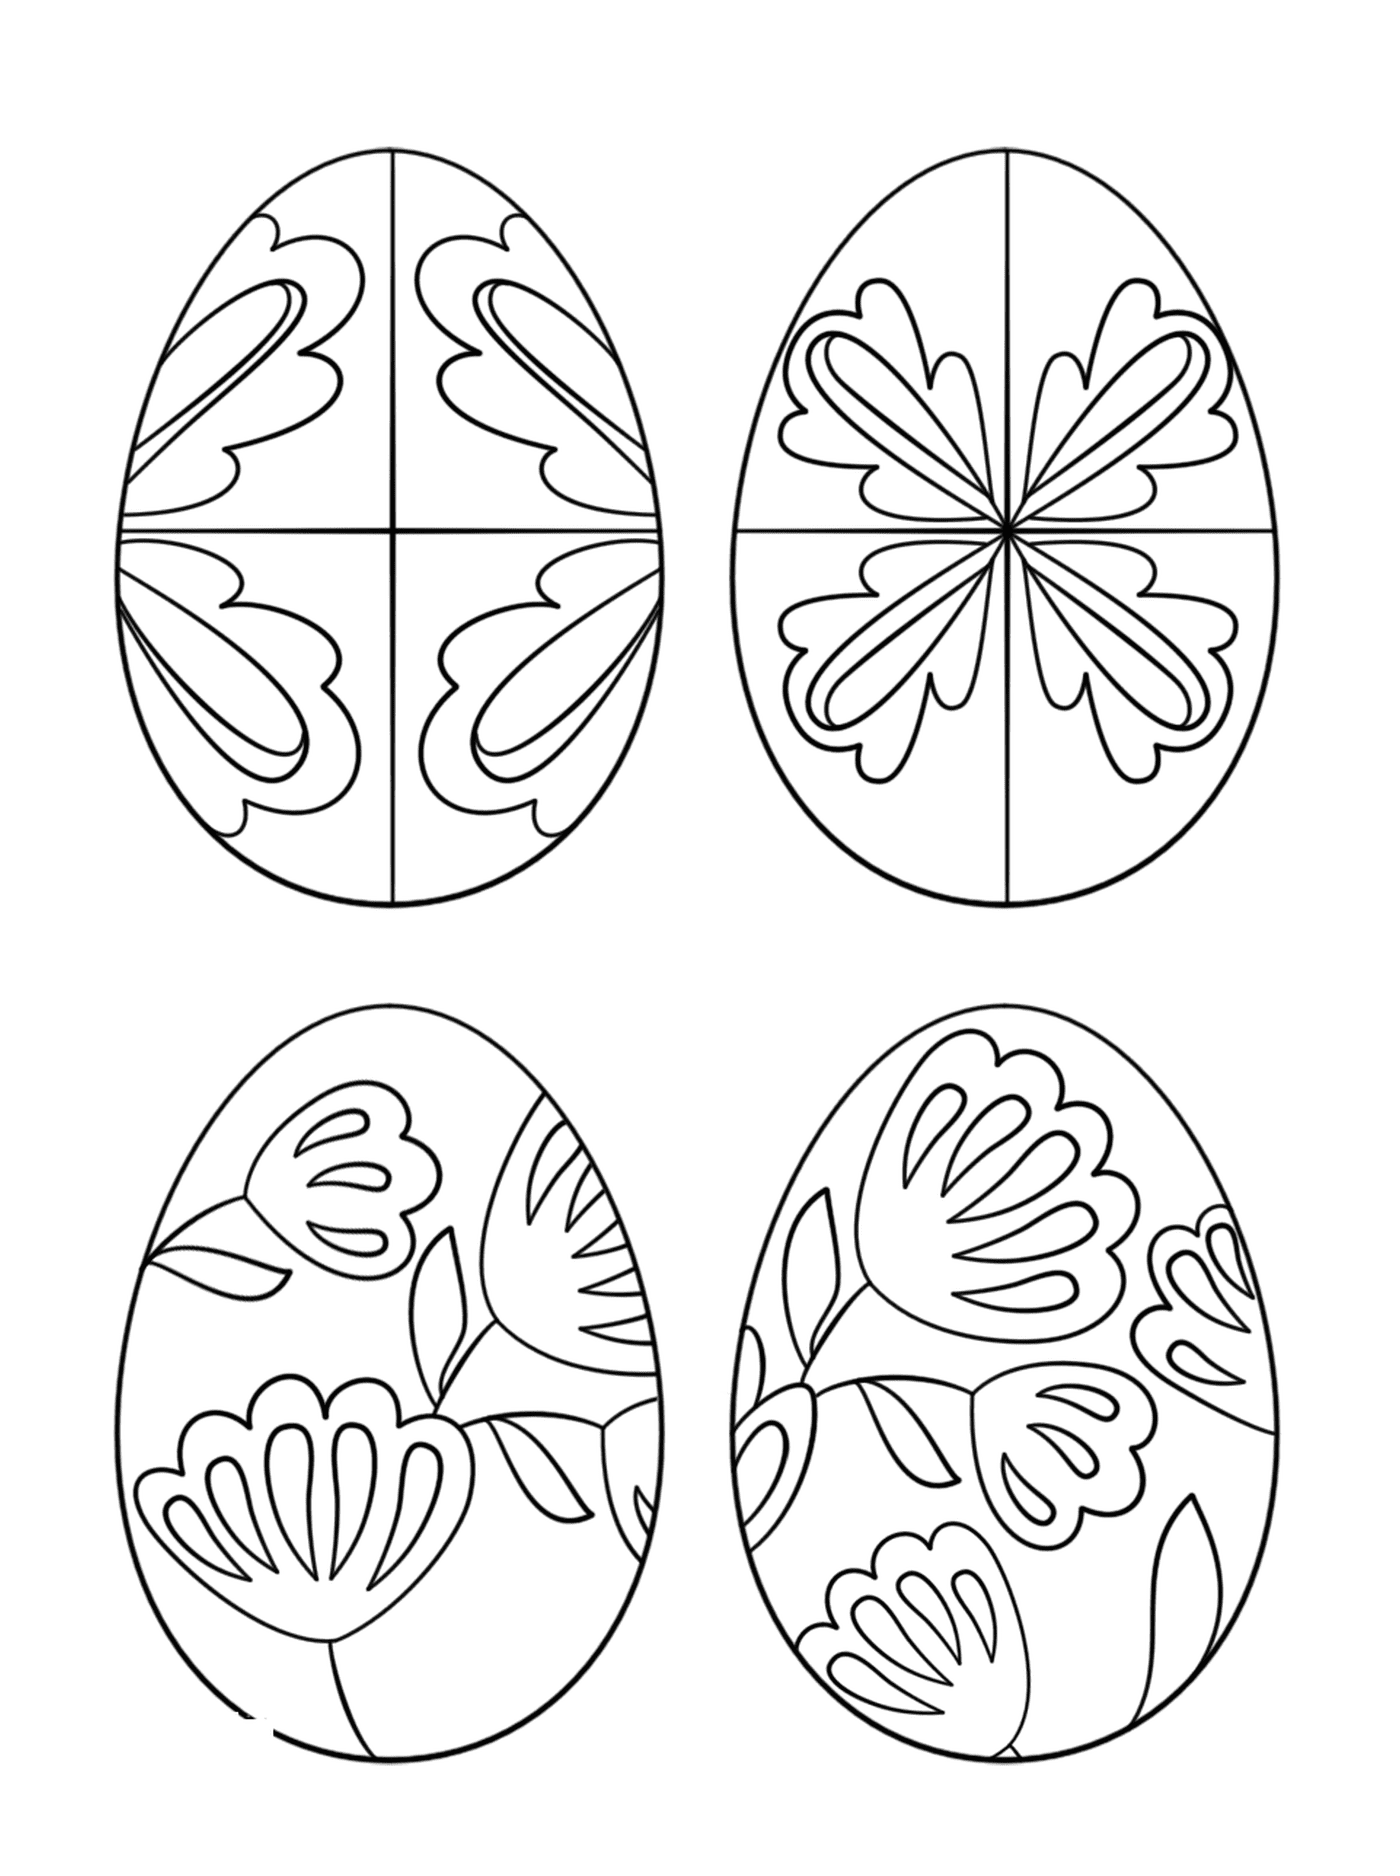  Писанские яйца, набор пасхальных яиц, украшенных различными образцами 